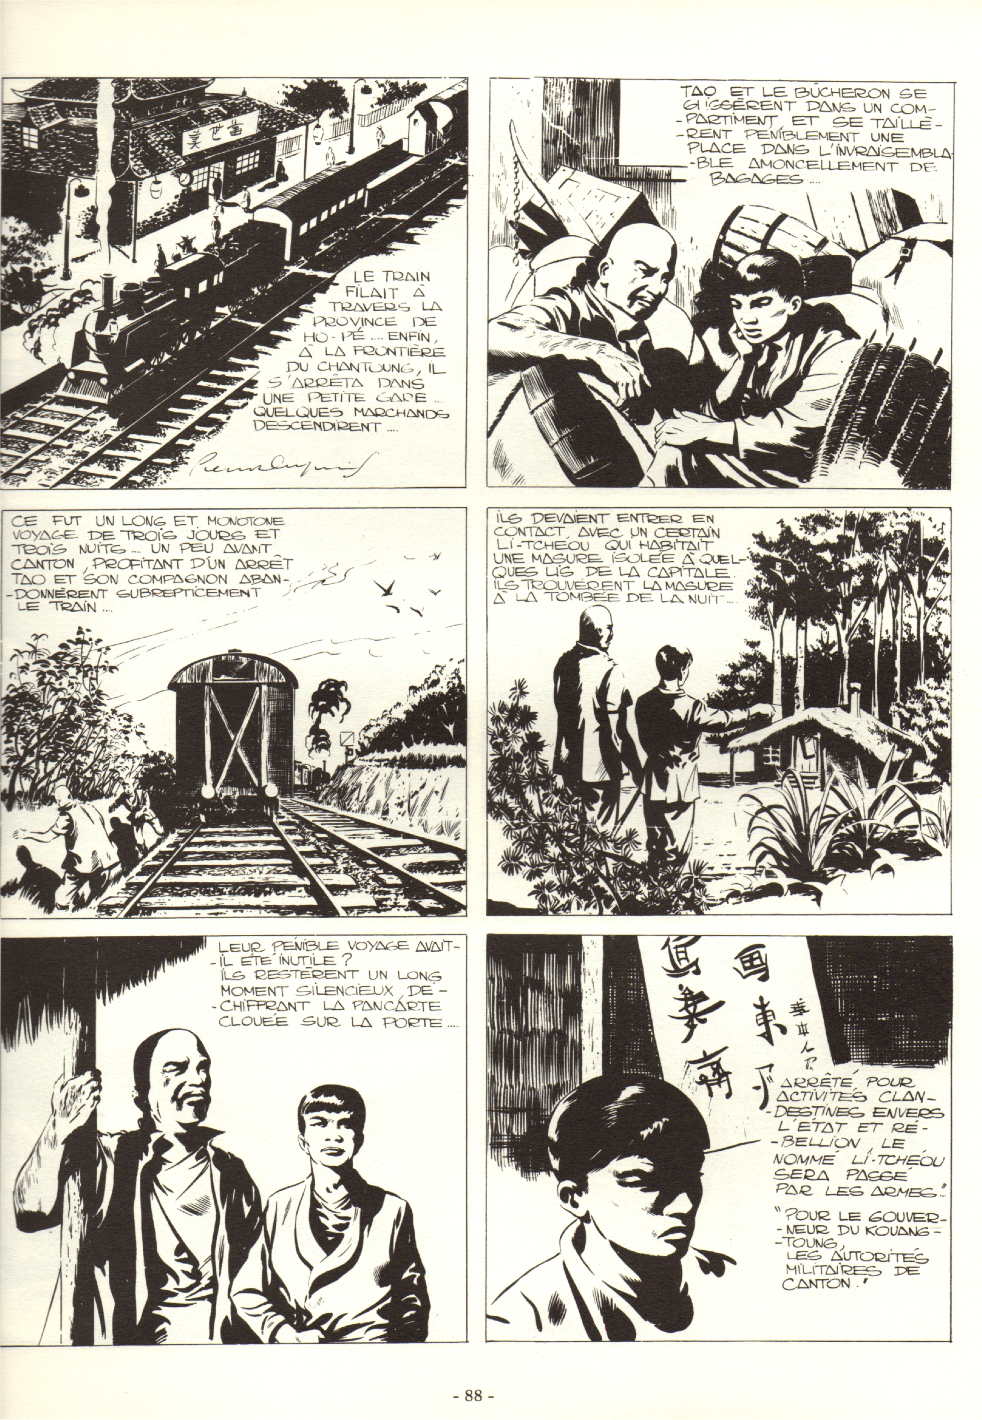 « Fils de Chine », planche 85 — Vaillant n° 377 (03/08/1952).